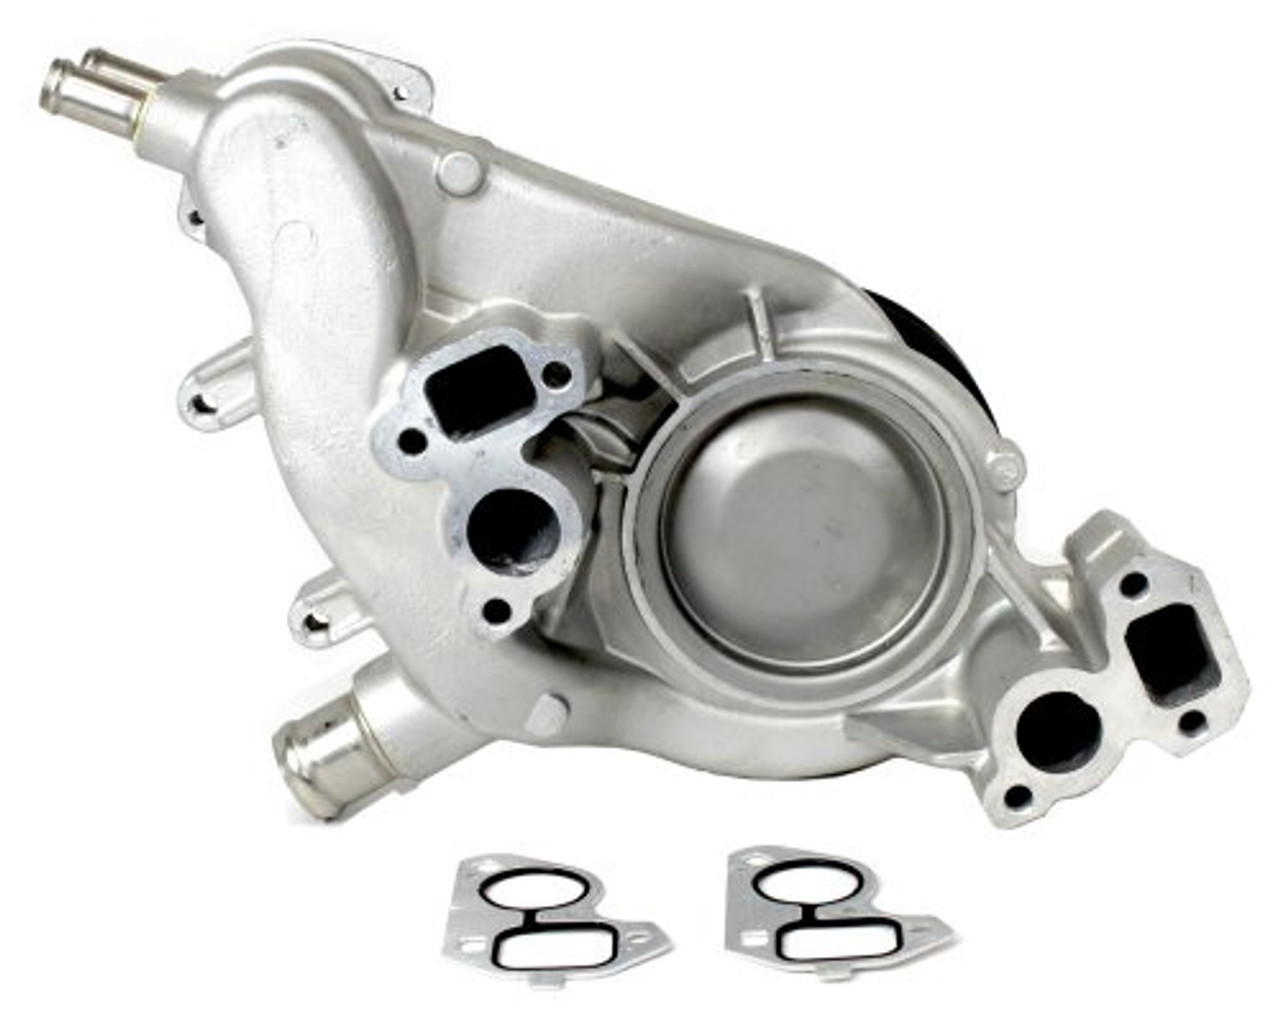 Water Pump - 2013 Chevrolet Suburban 1500 5.3L Engine Parts # WP3169ZE150